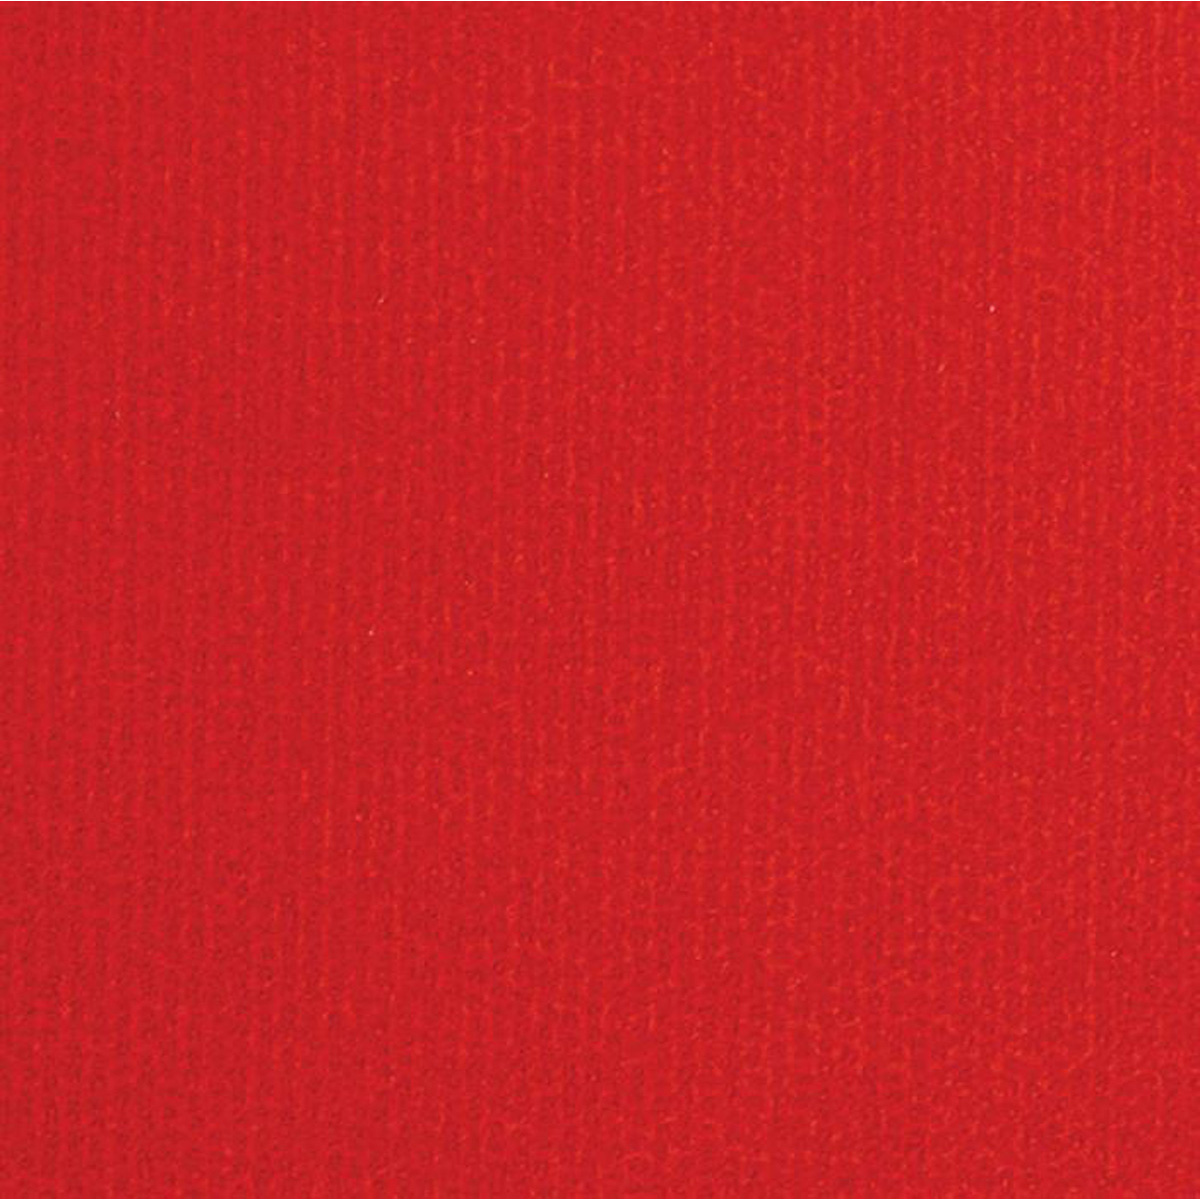 Messetæppe rip/latex rød løber 1,33x60 m